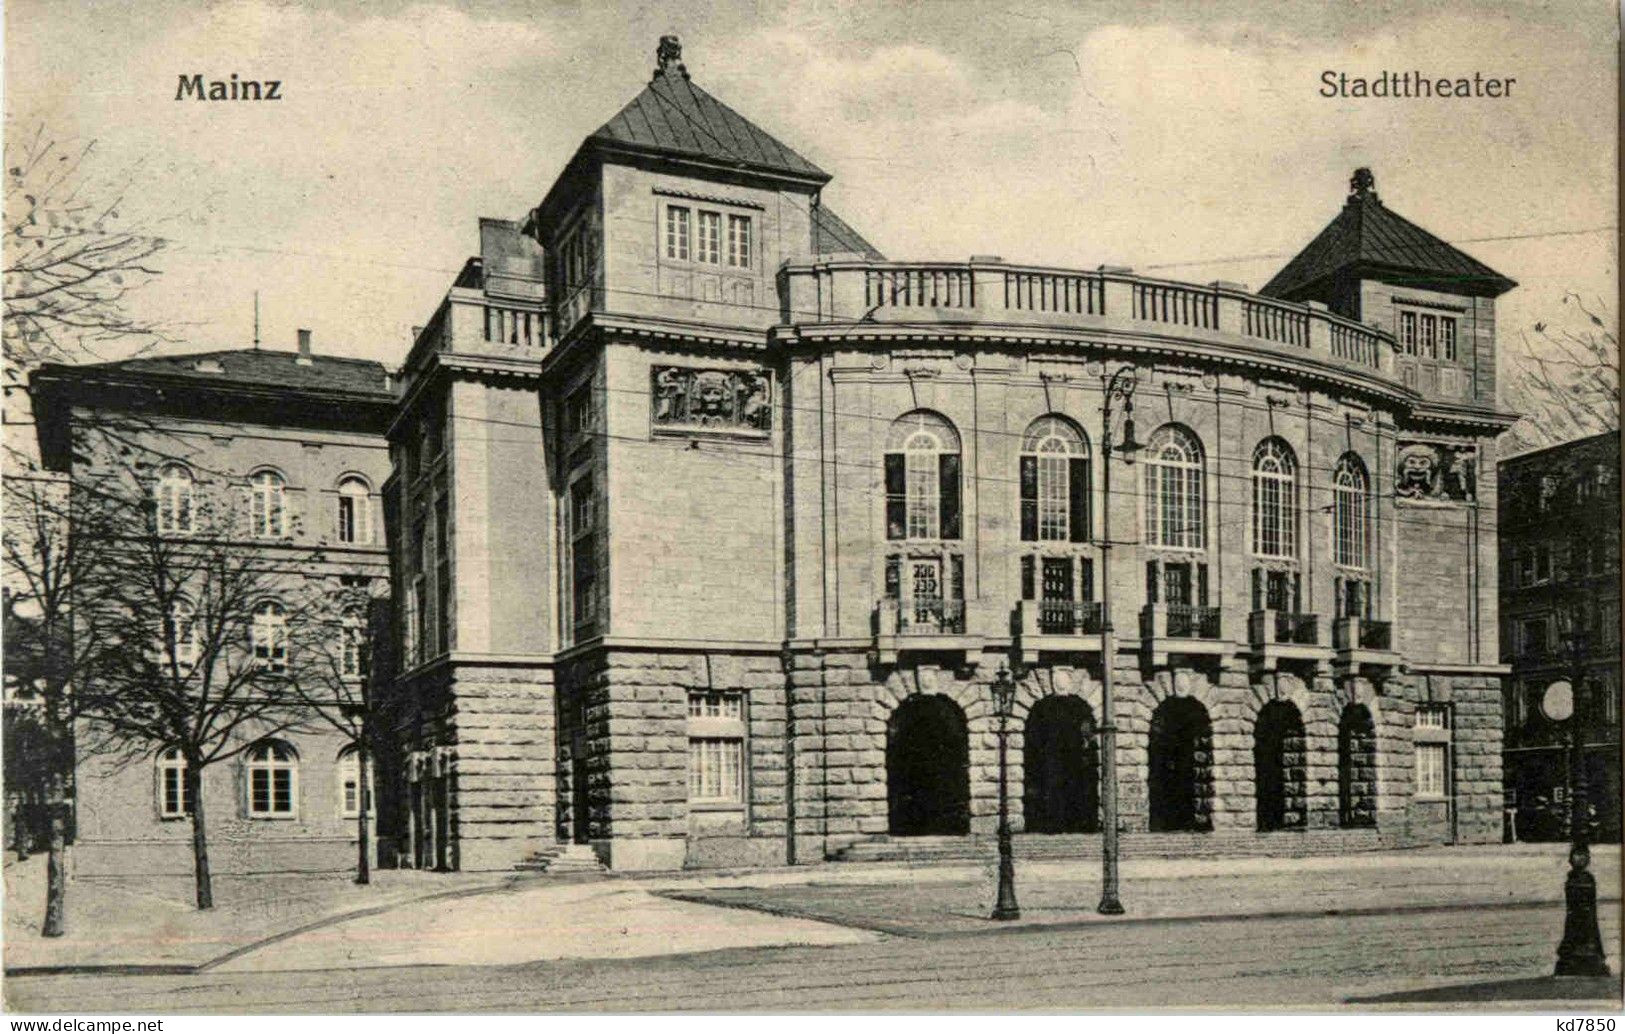 Mainz - Stadttheater - Mainz